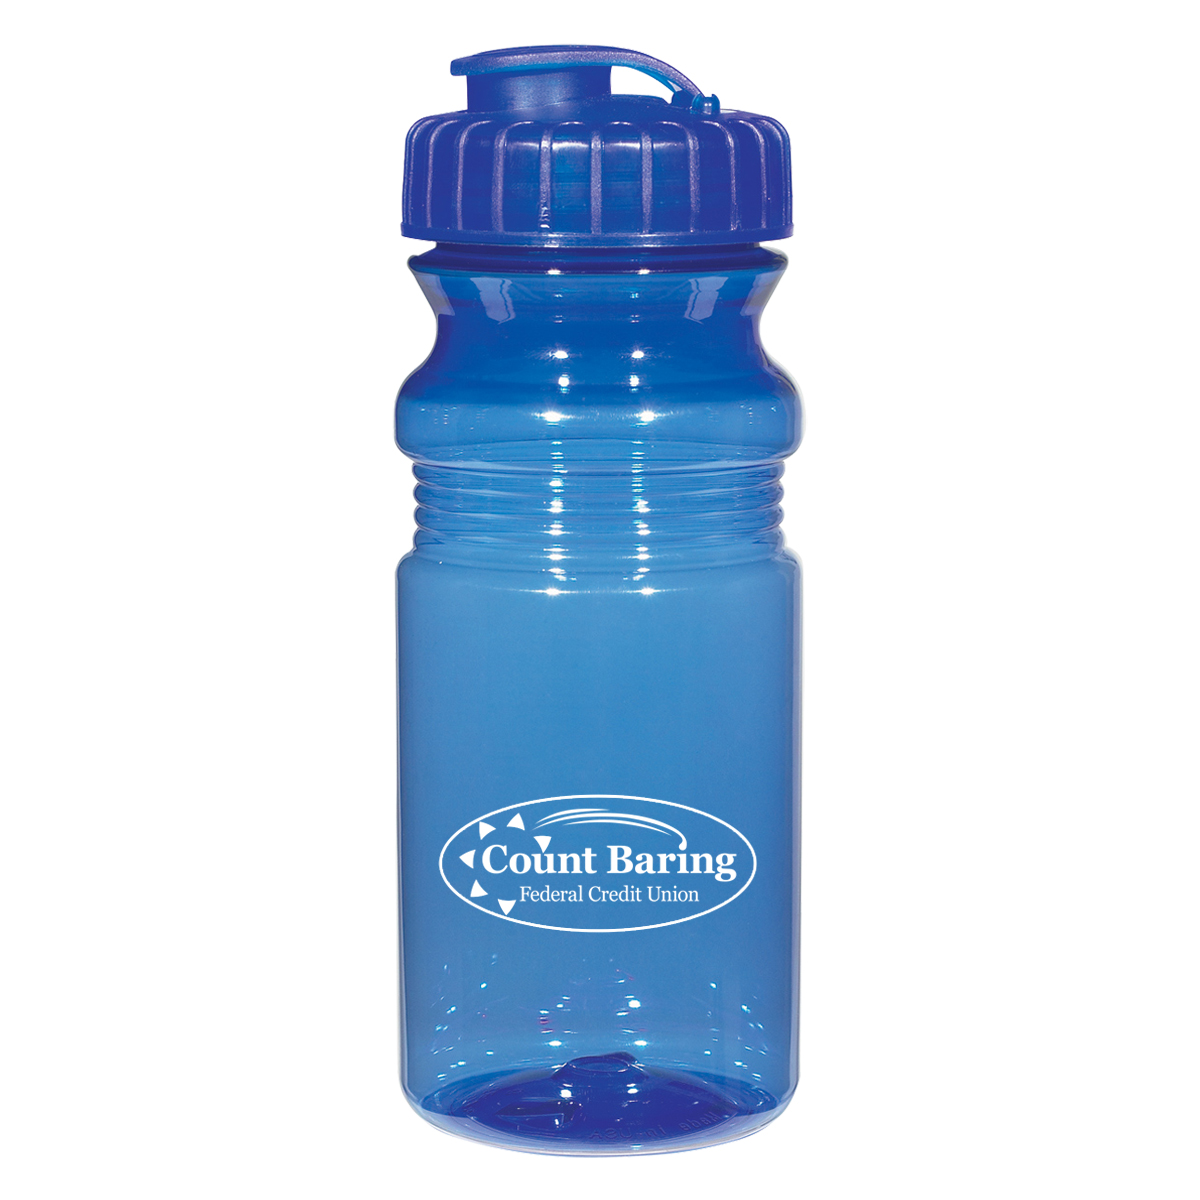 20 oz Sublimation Water Bottle – HTVMAX